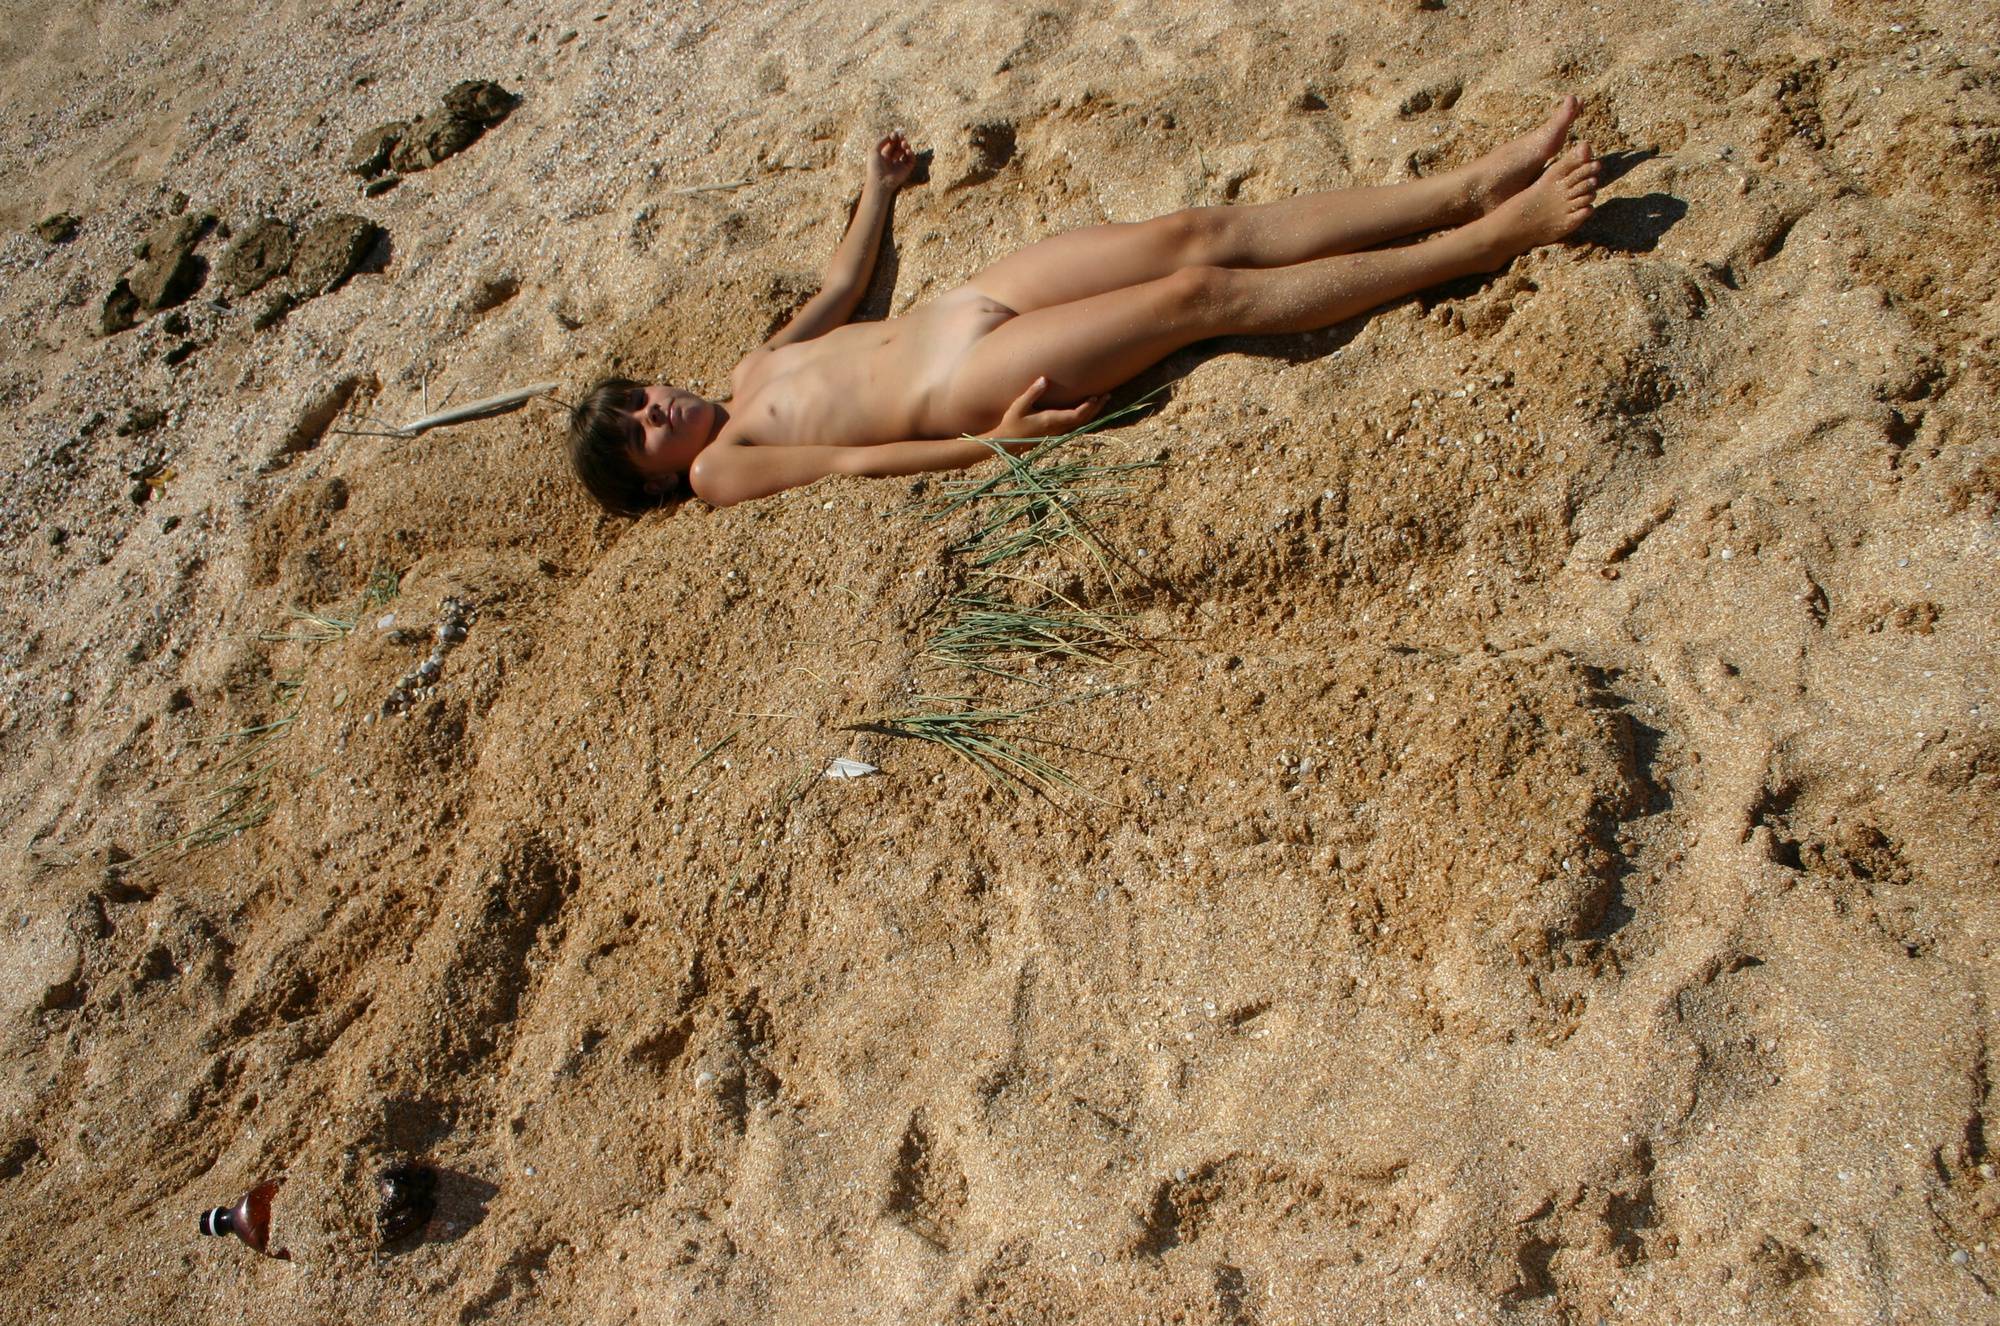 Nudist Pics Naturist Beach Sand Kings - 2